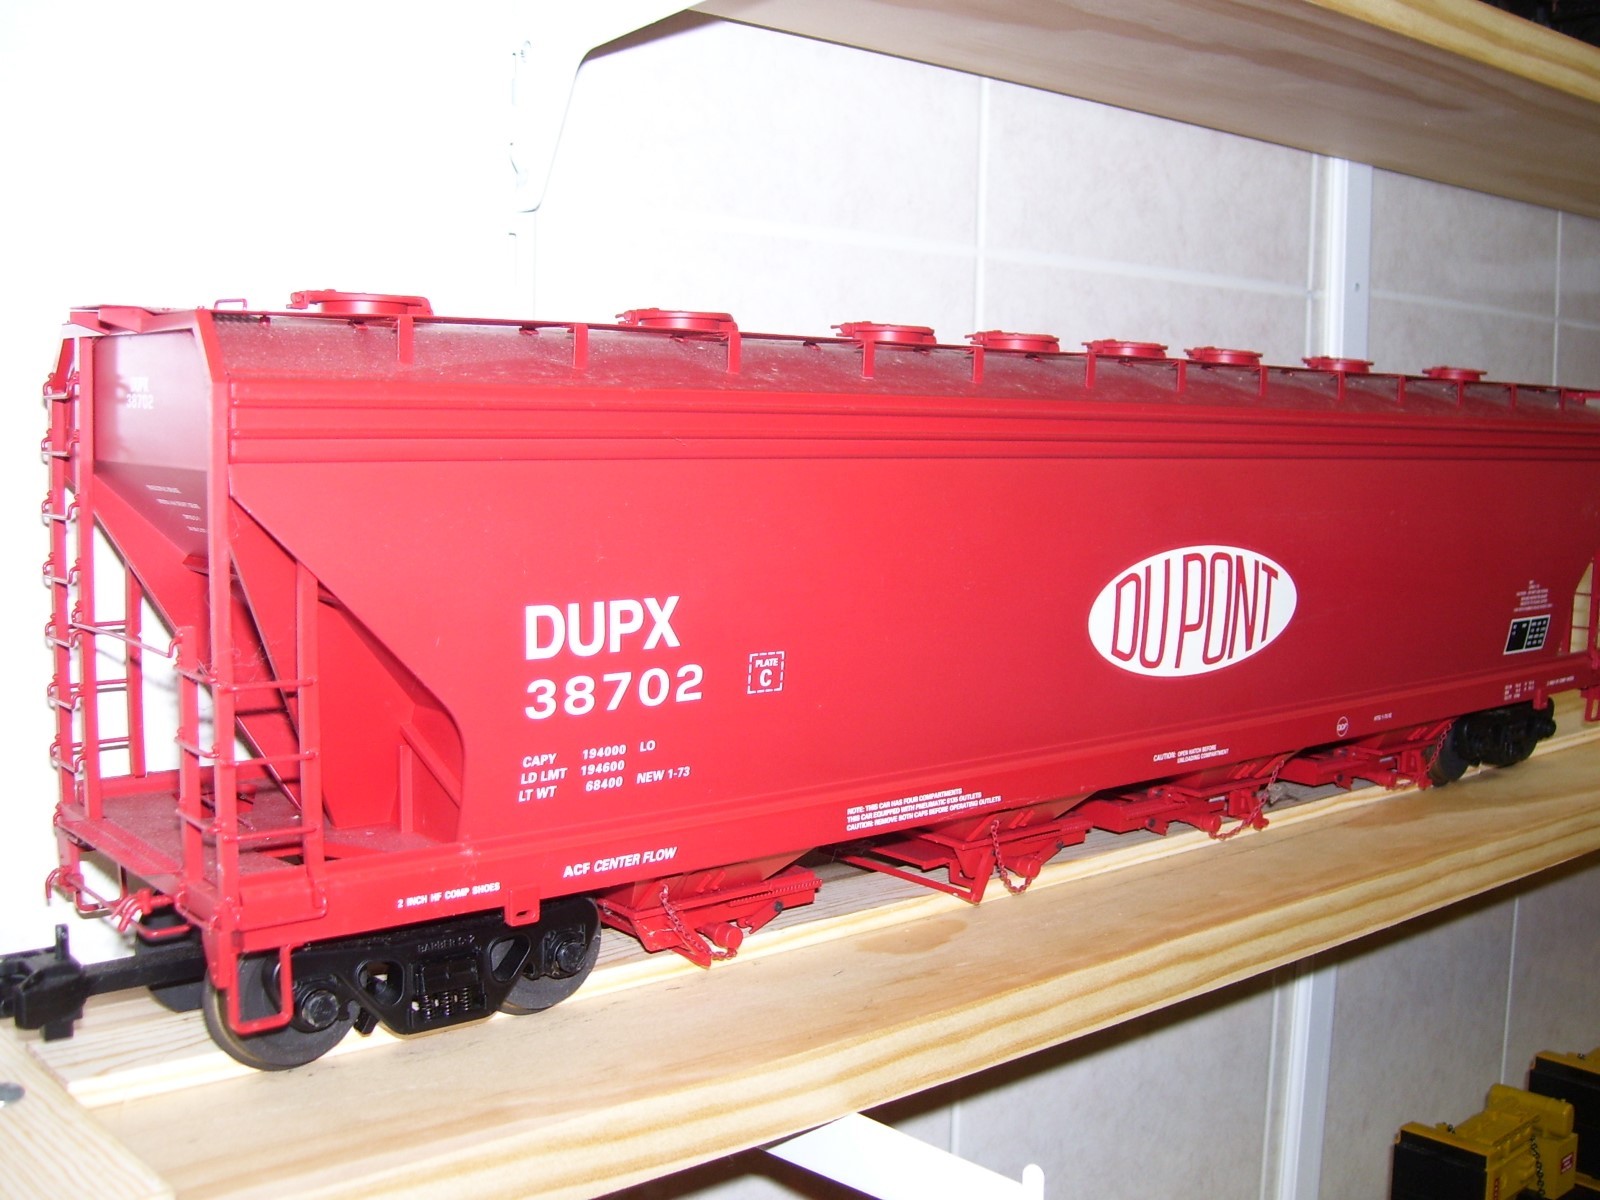 R14120 Dupont Dupx 38702